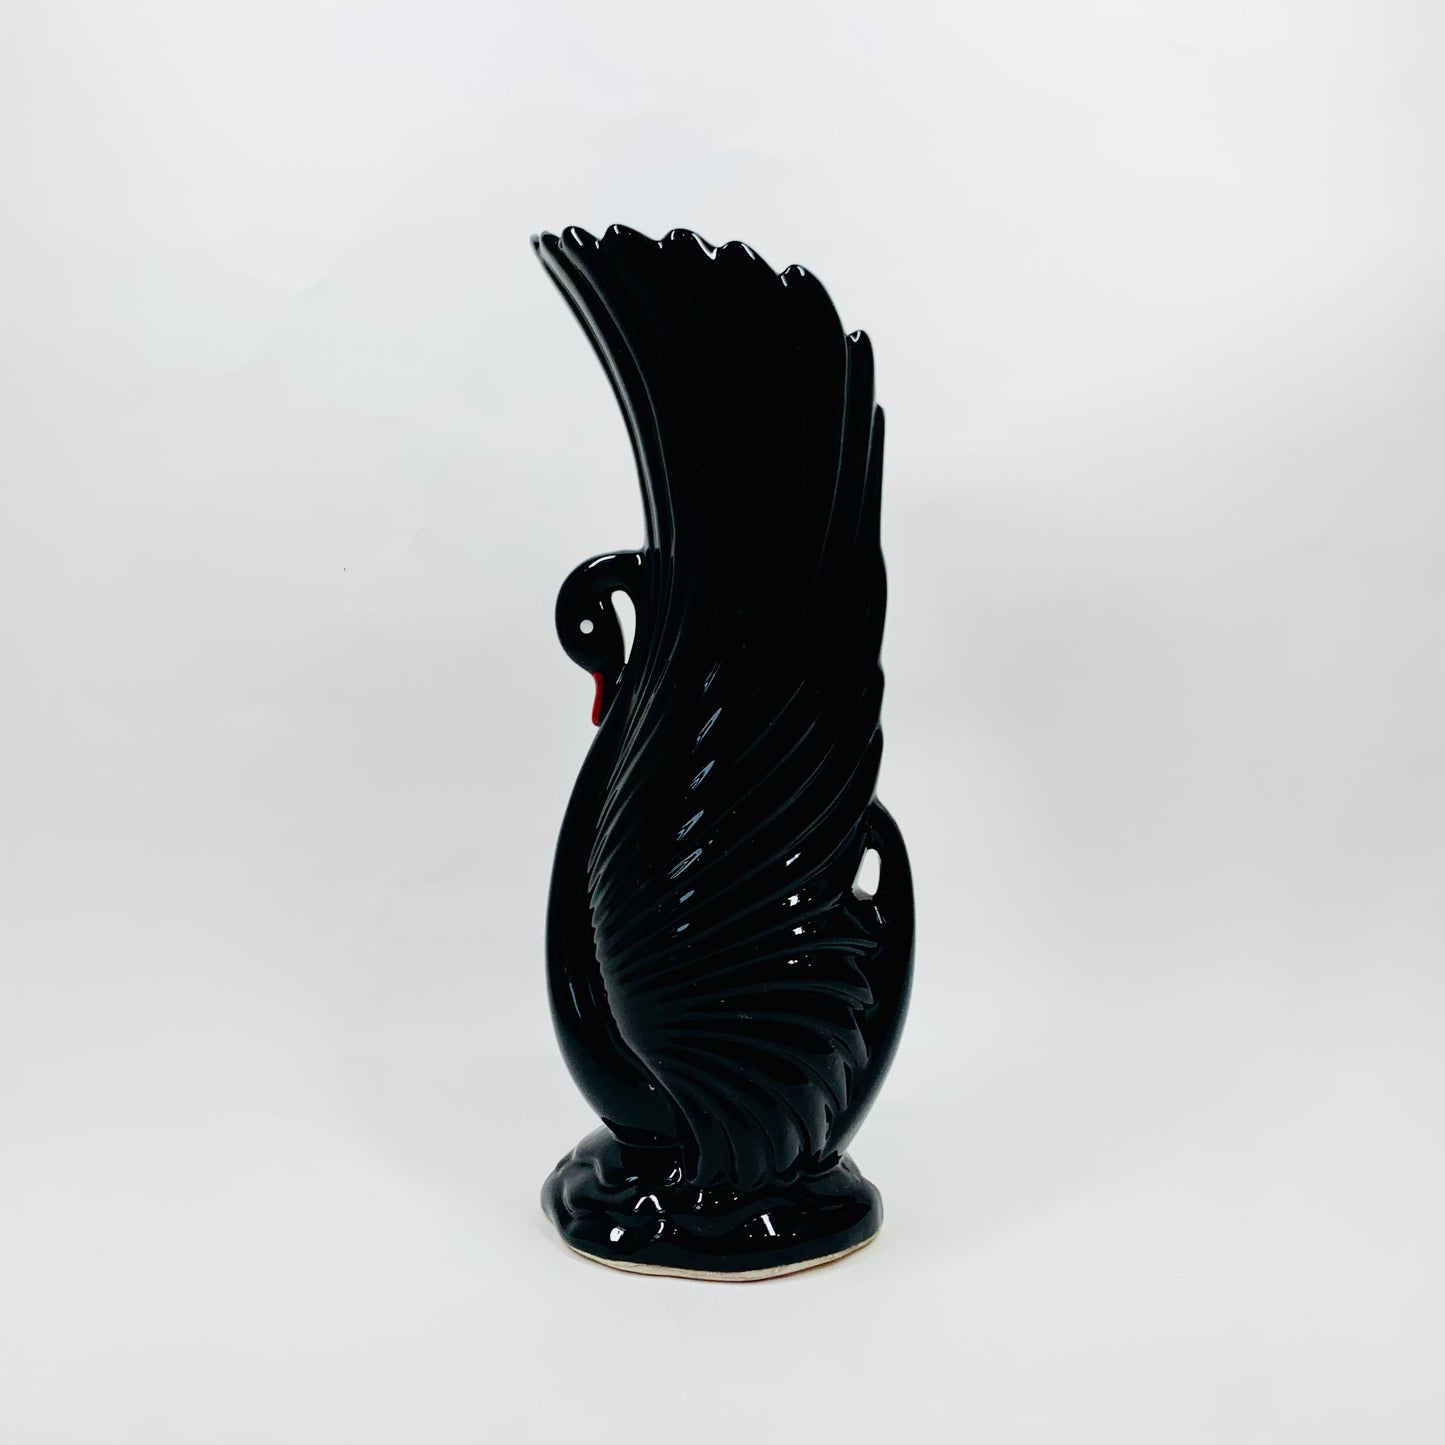 Rare 1970s black porcelain swan vase